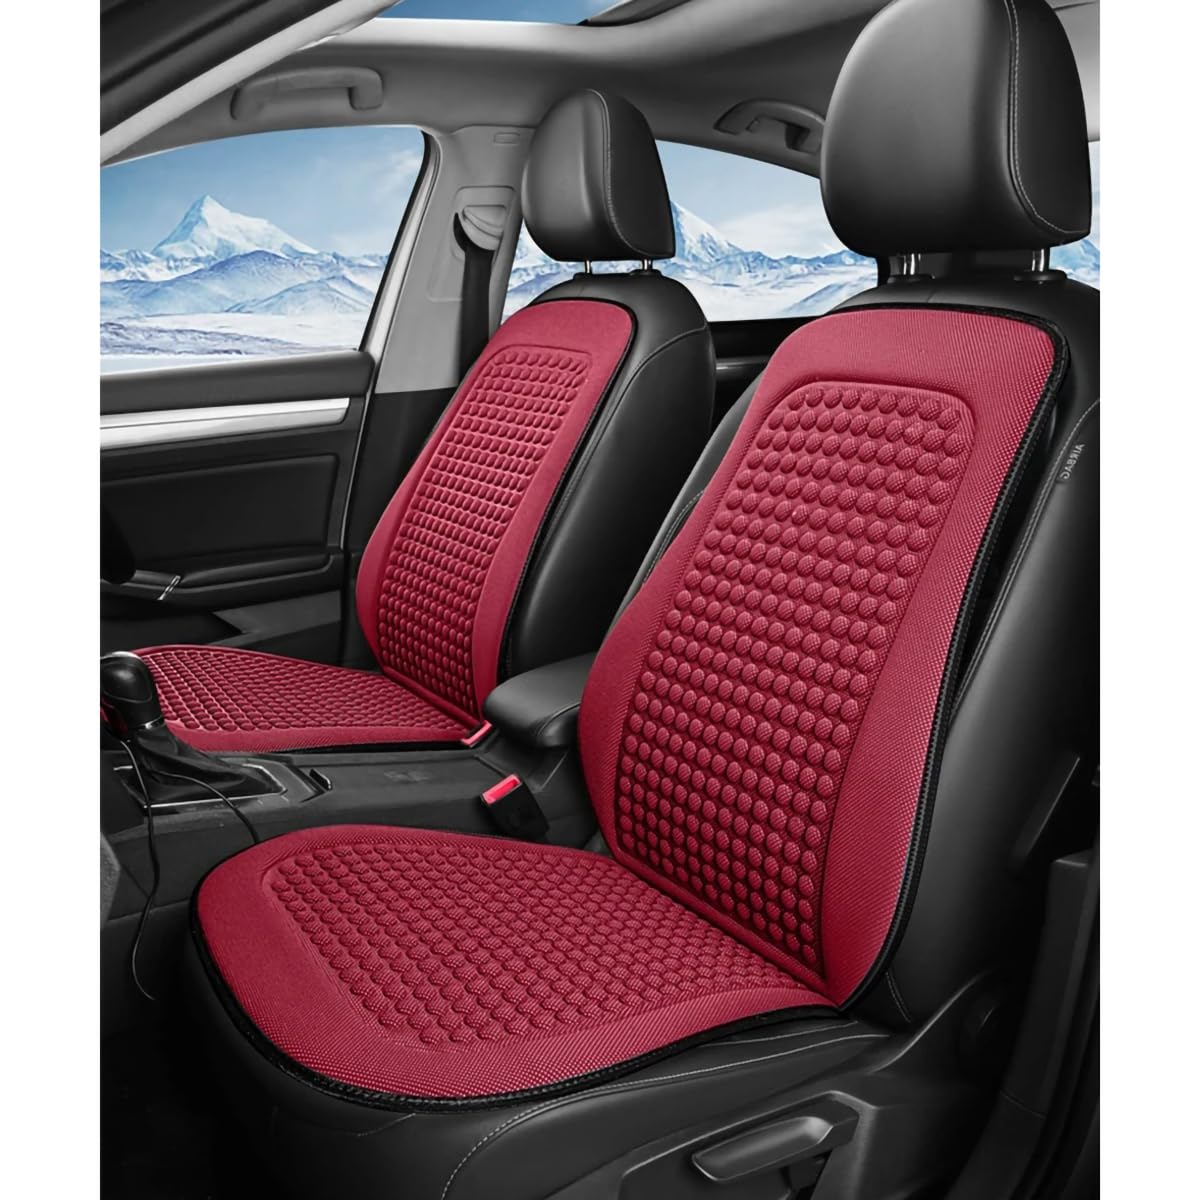 Spulhc Autositzbezug für SEAT ibiza 2010 2011 2012 2013 2014-2017, kühles Sitzkissen aus Eisseide, kühlendes/atmungsaktives Kissen,C-red-2 set von Spulhc